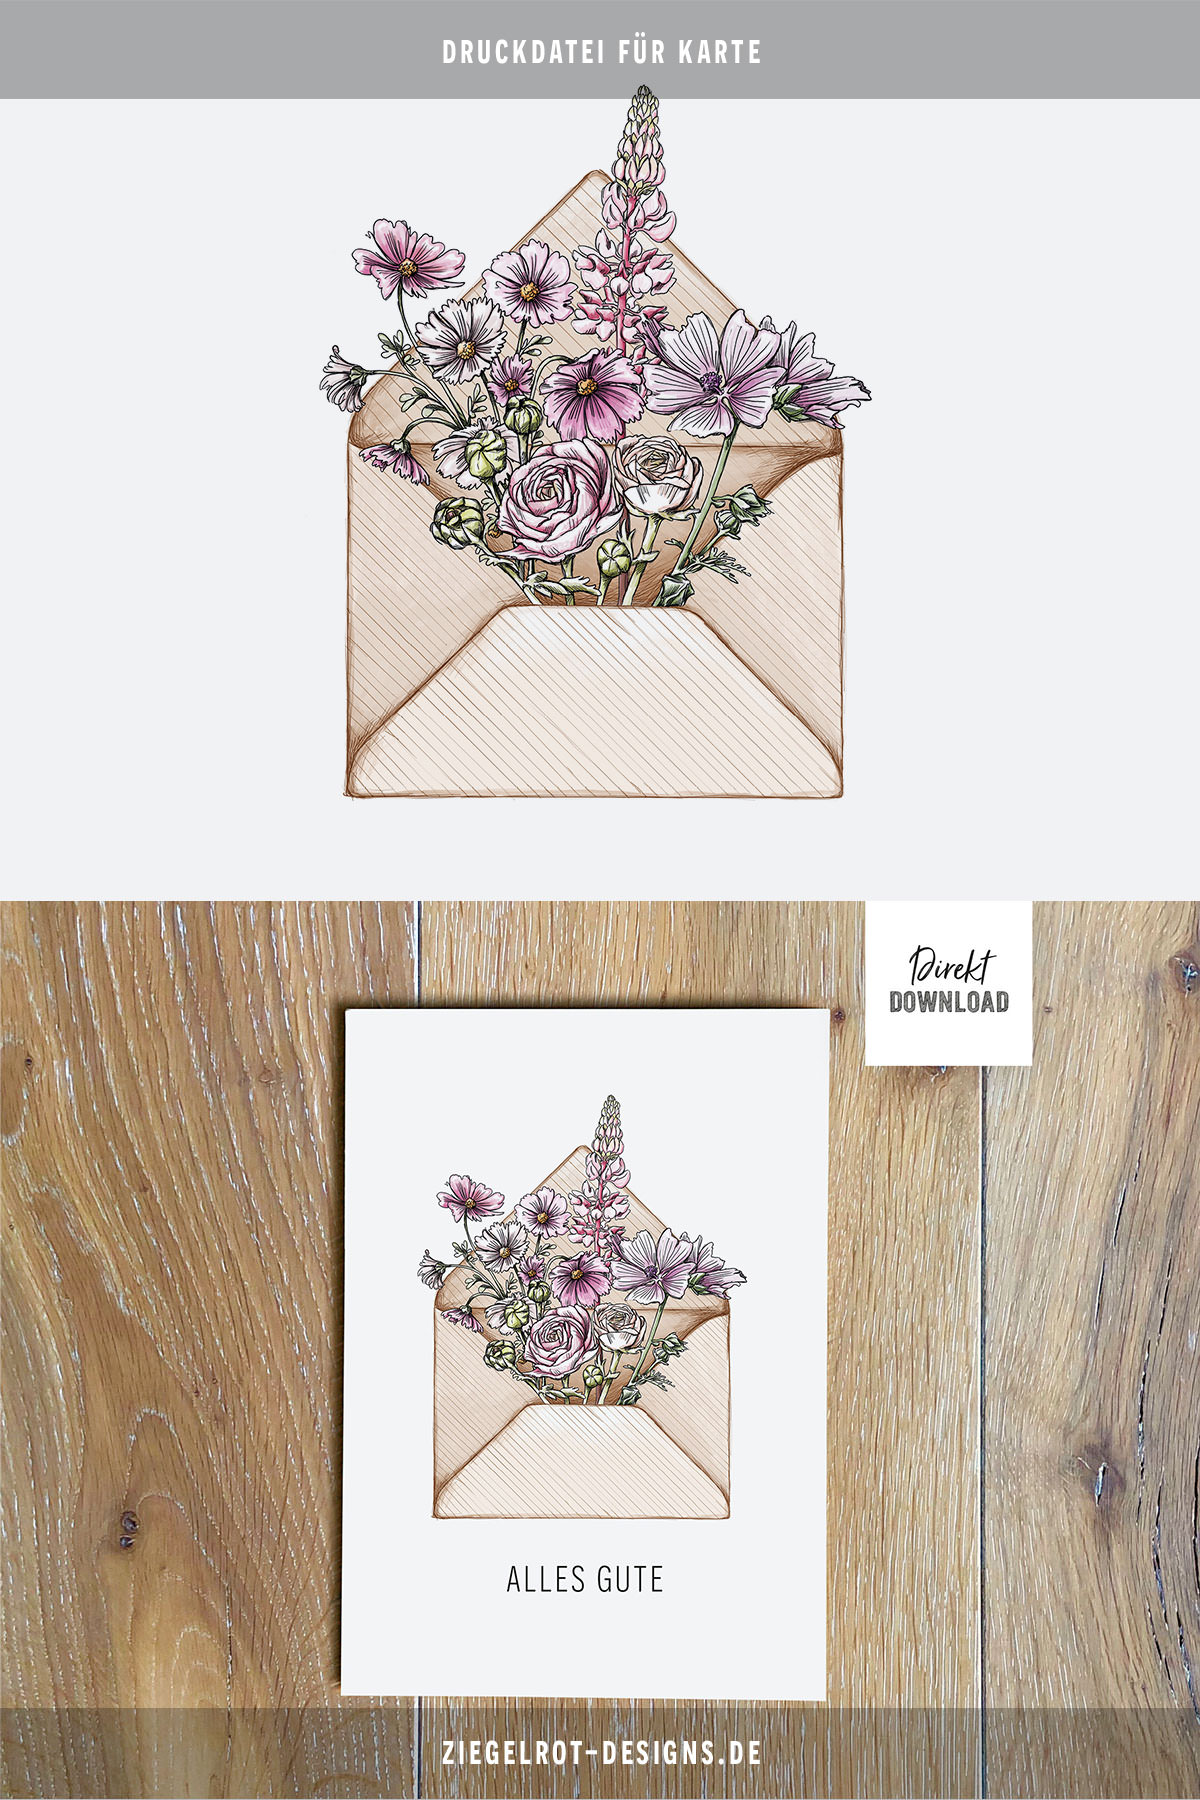 Druckdatei für Klappkarte Alles Gute mit Blumen im Briefumschlag, Glückwunschkarte zum Basteln